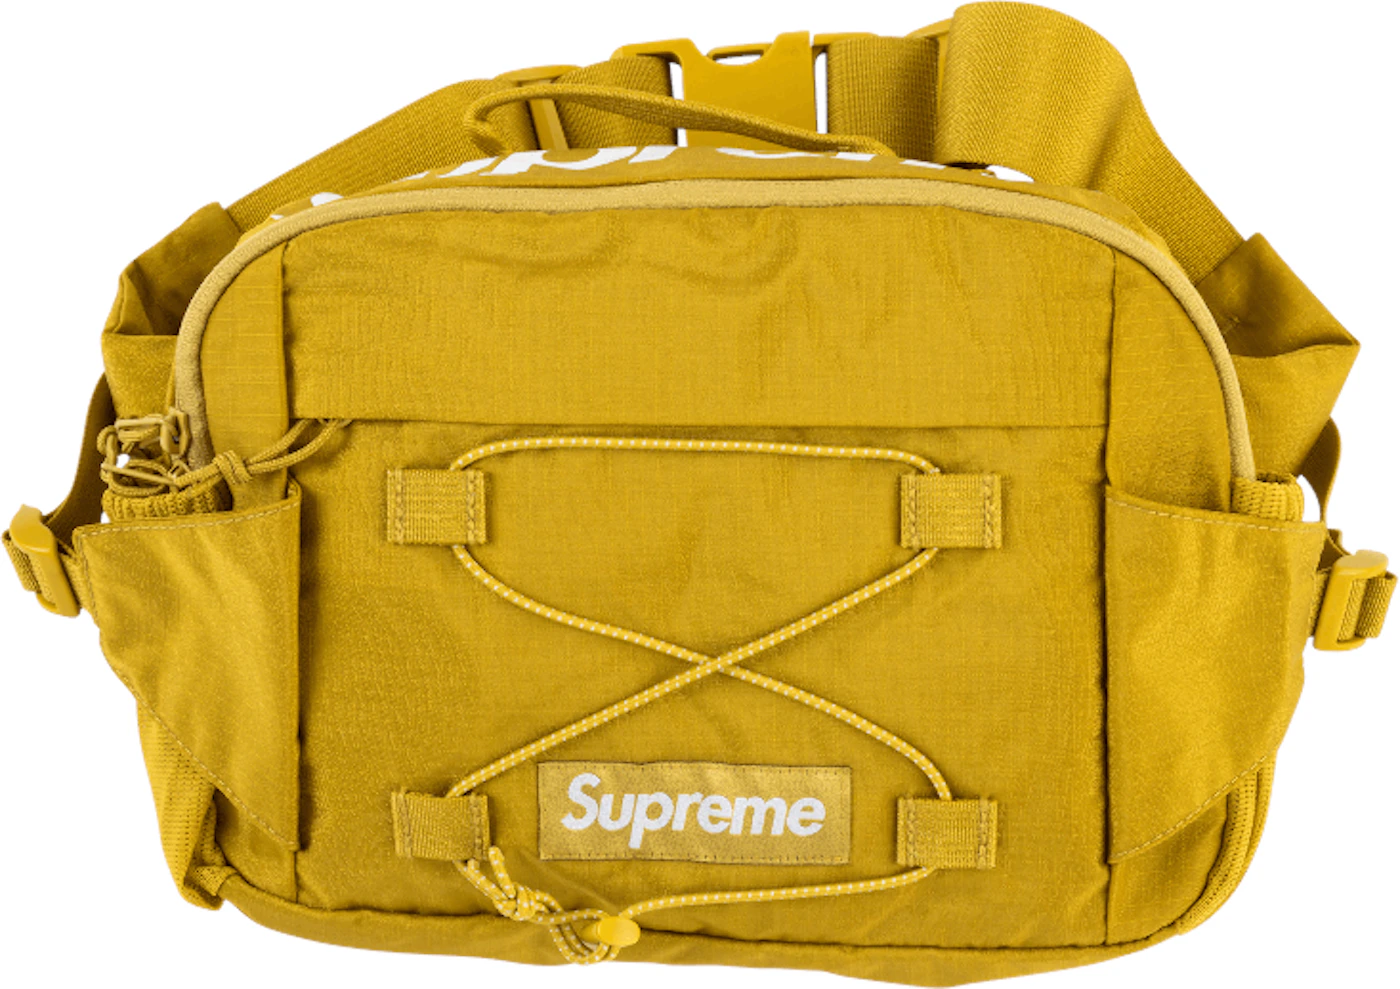 Supreme SS17 Teal Ripstop Waist Bag, Grailed